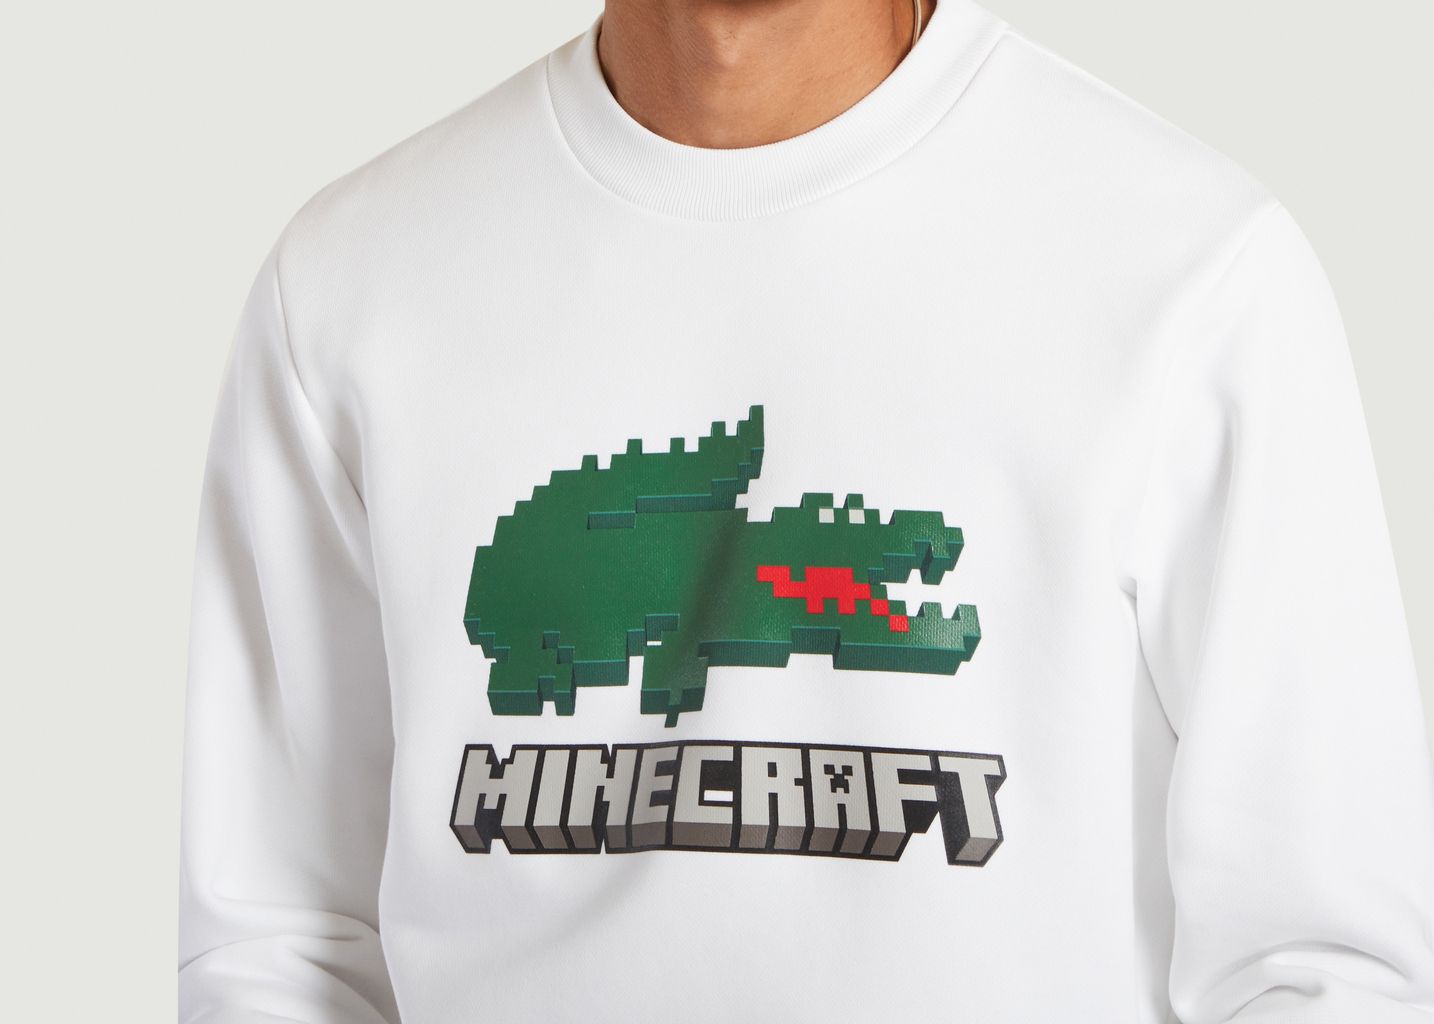 Lacoste x Minecraft Sweatshirt aus Bio-Baumwolle - Lacoste